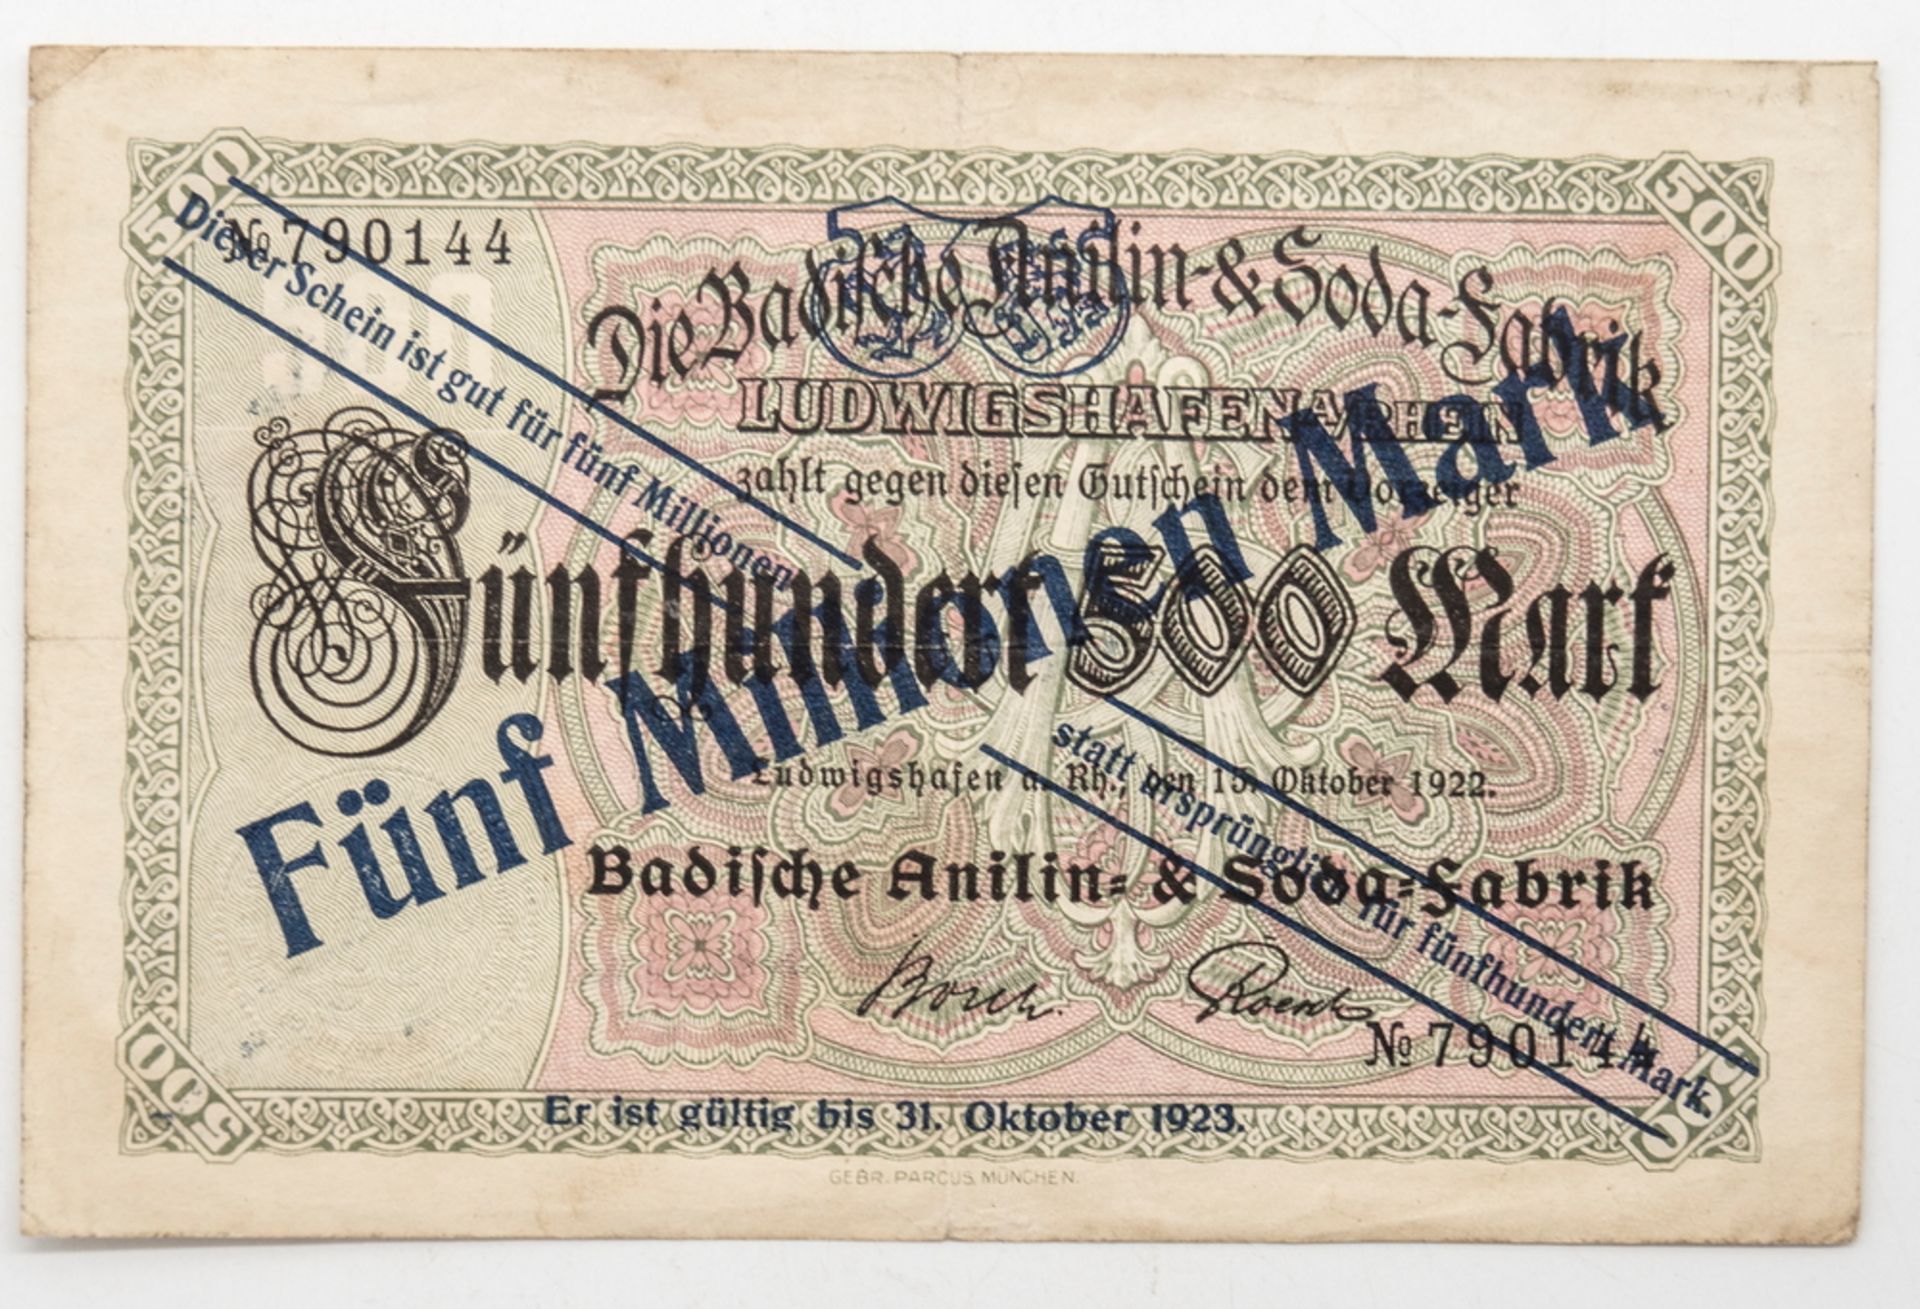 Deutschland 1922, BASF Ludwigshafen a. Rhein, Notgeld 5 Millionen Mark. Erhaltung: ss.